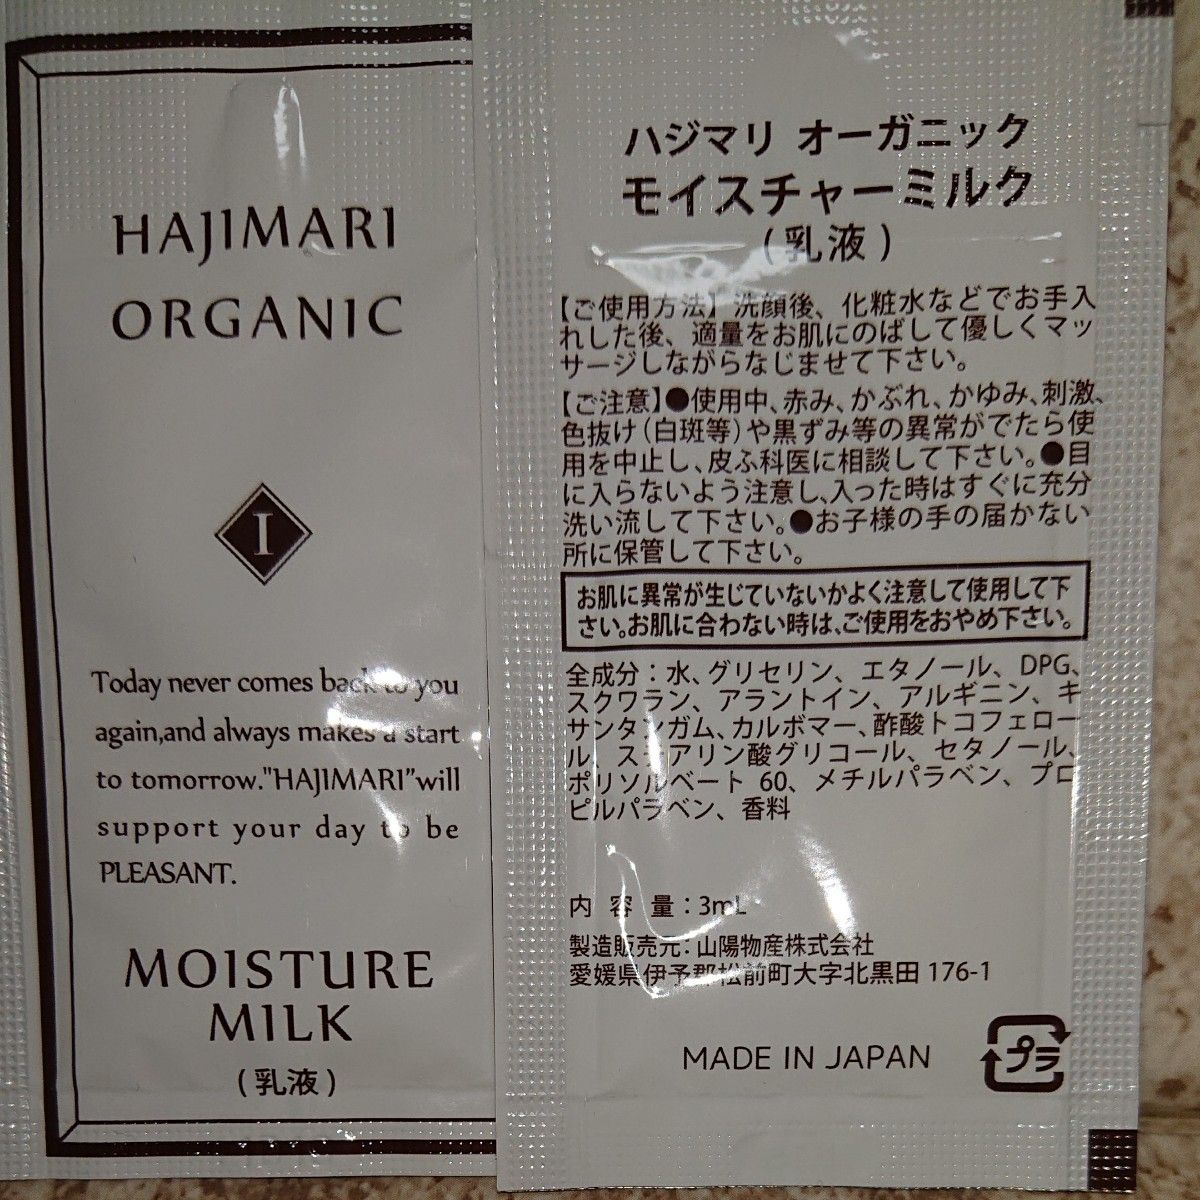 HAJIMARI  ORGANIC 化粧品   スキンケア  パウチ 個包装タイプ   3ml  各5個  総数20個